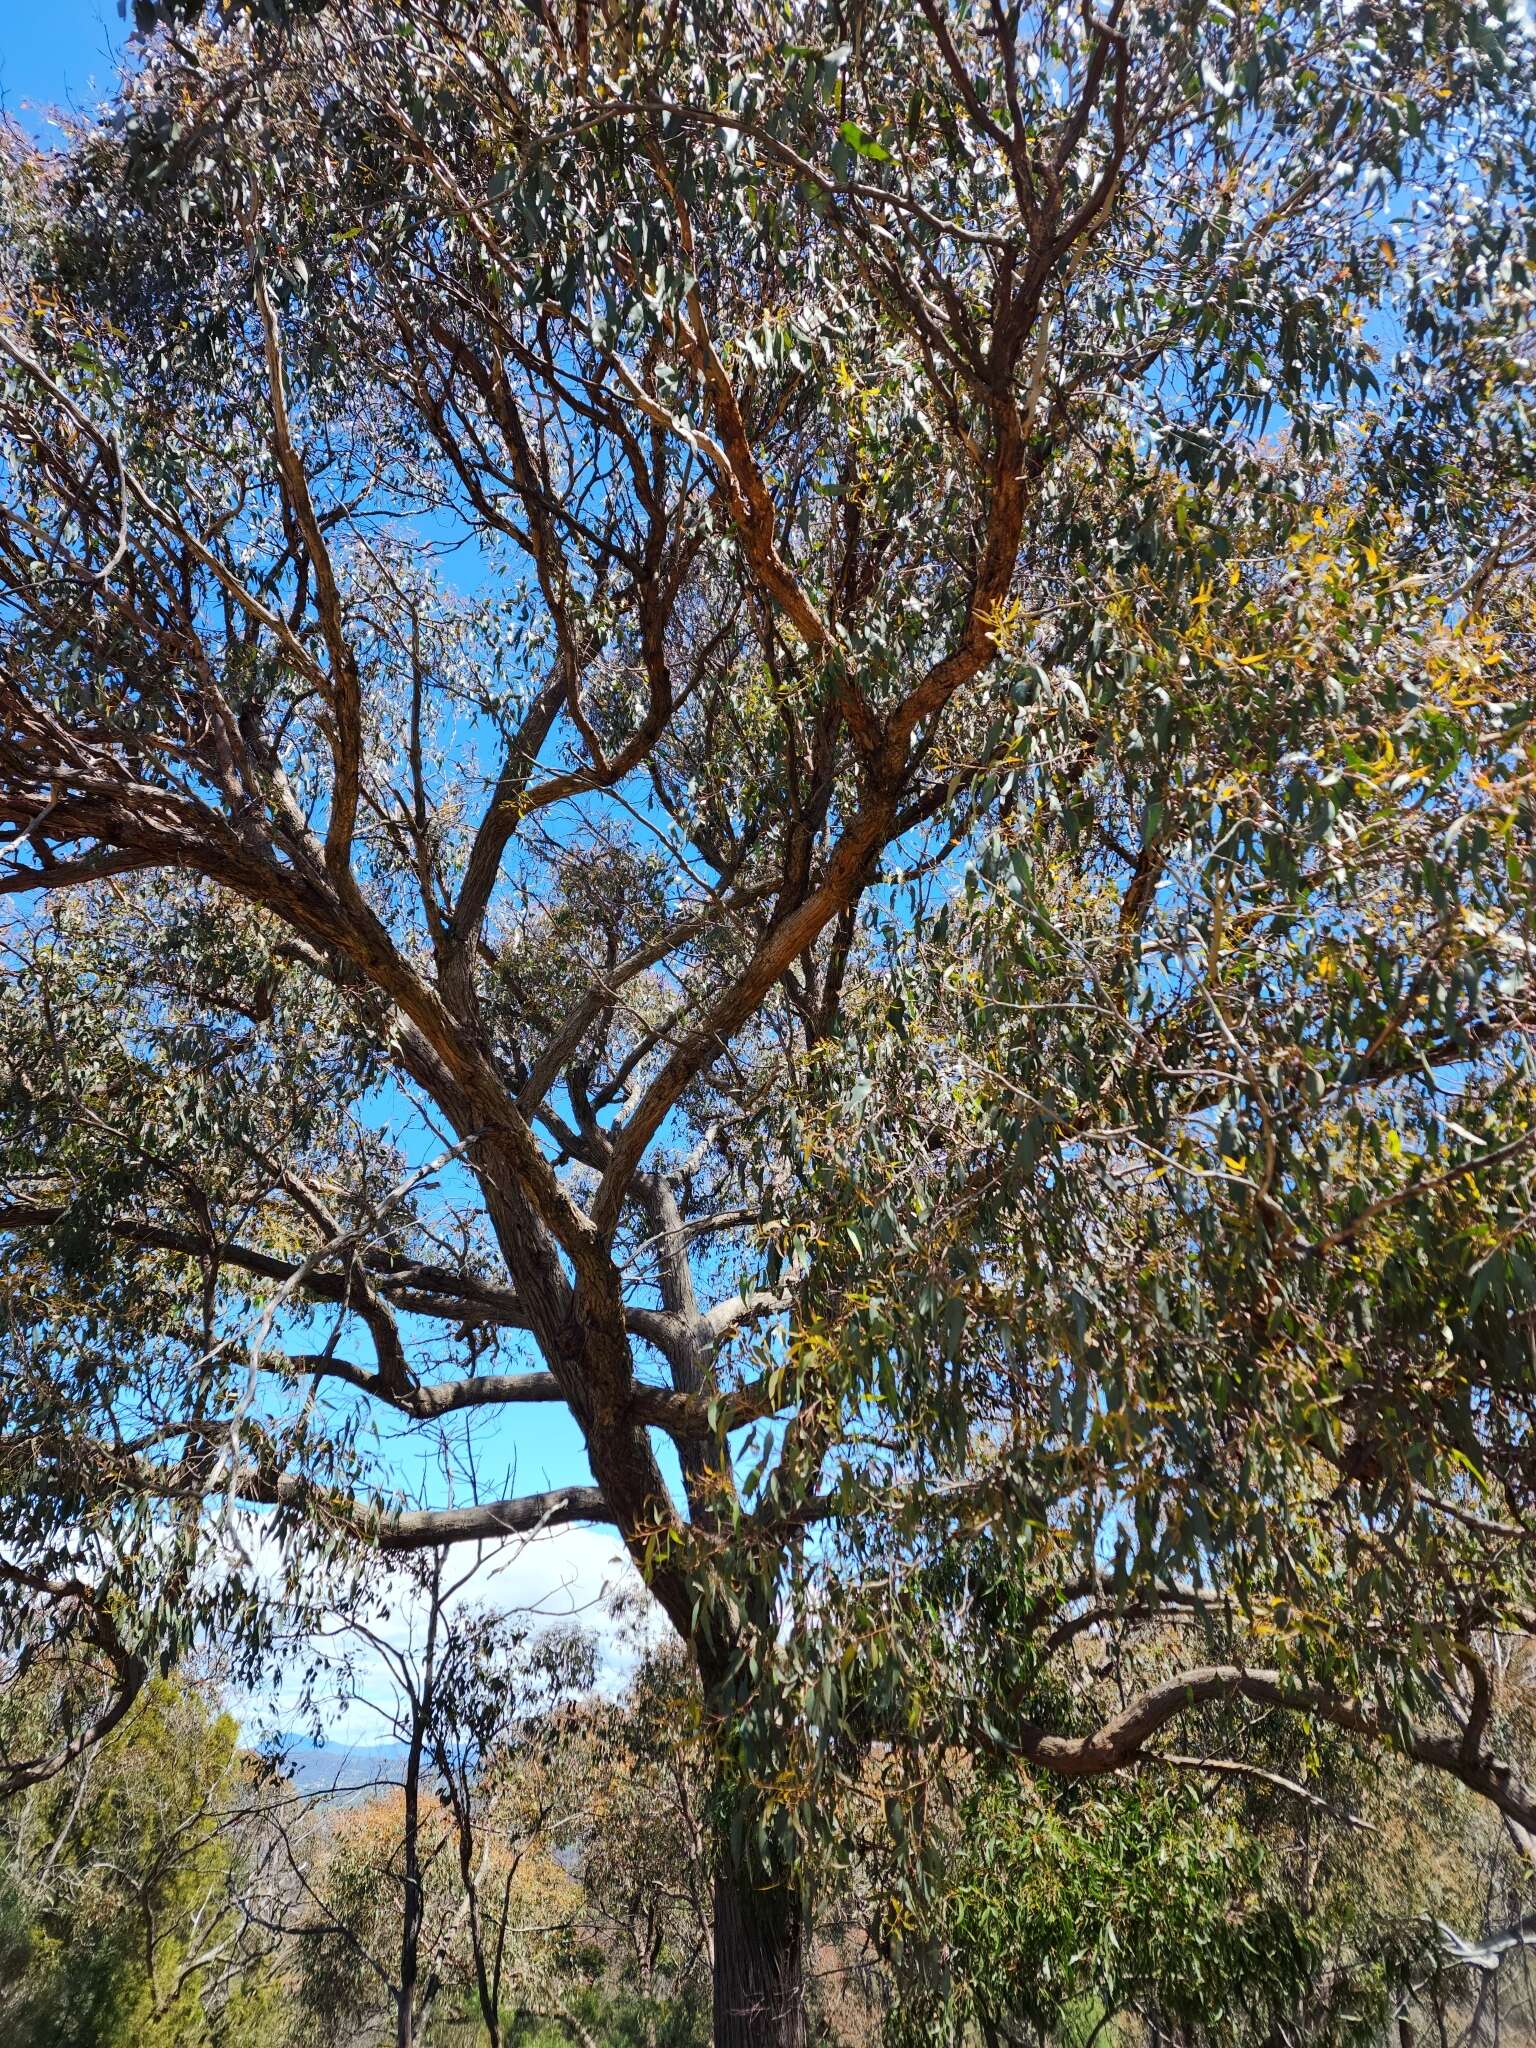 Image of Eucalyptus macrorhyncha subsp. macrorhyncha